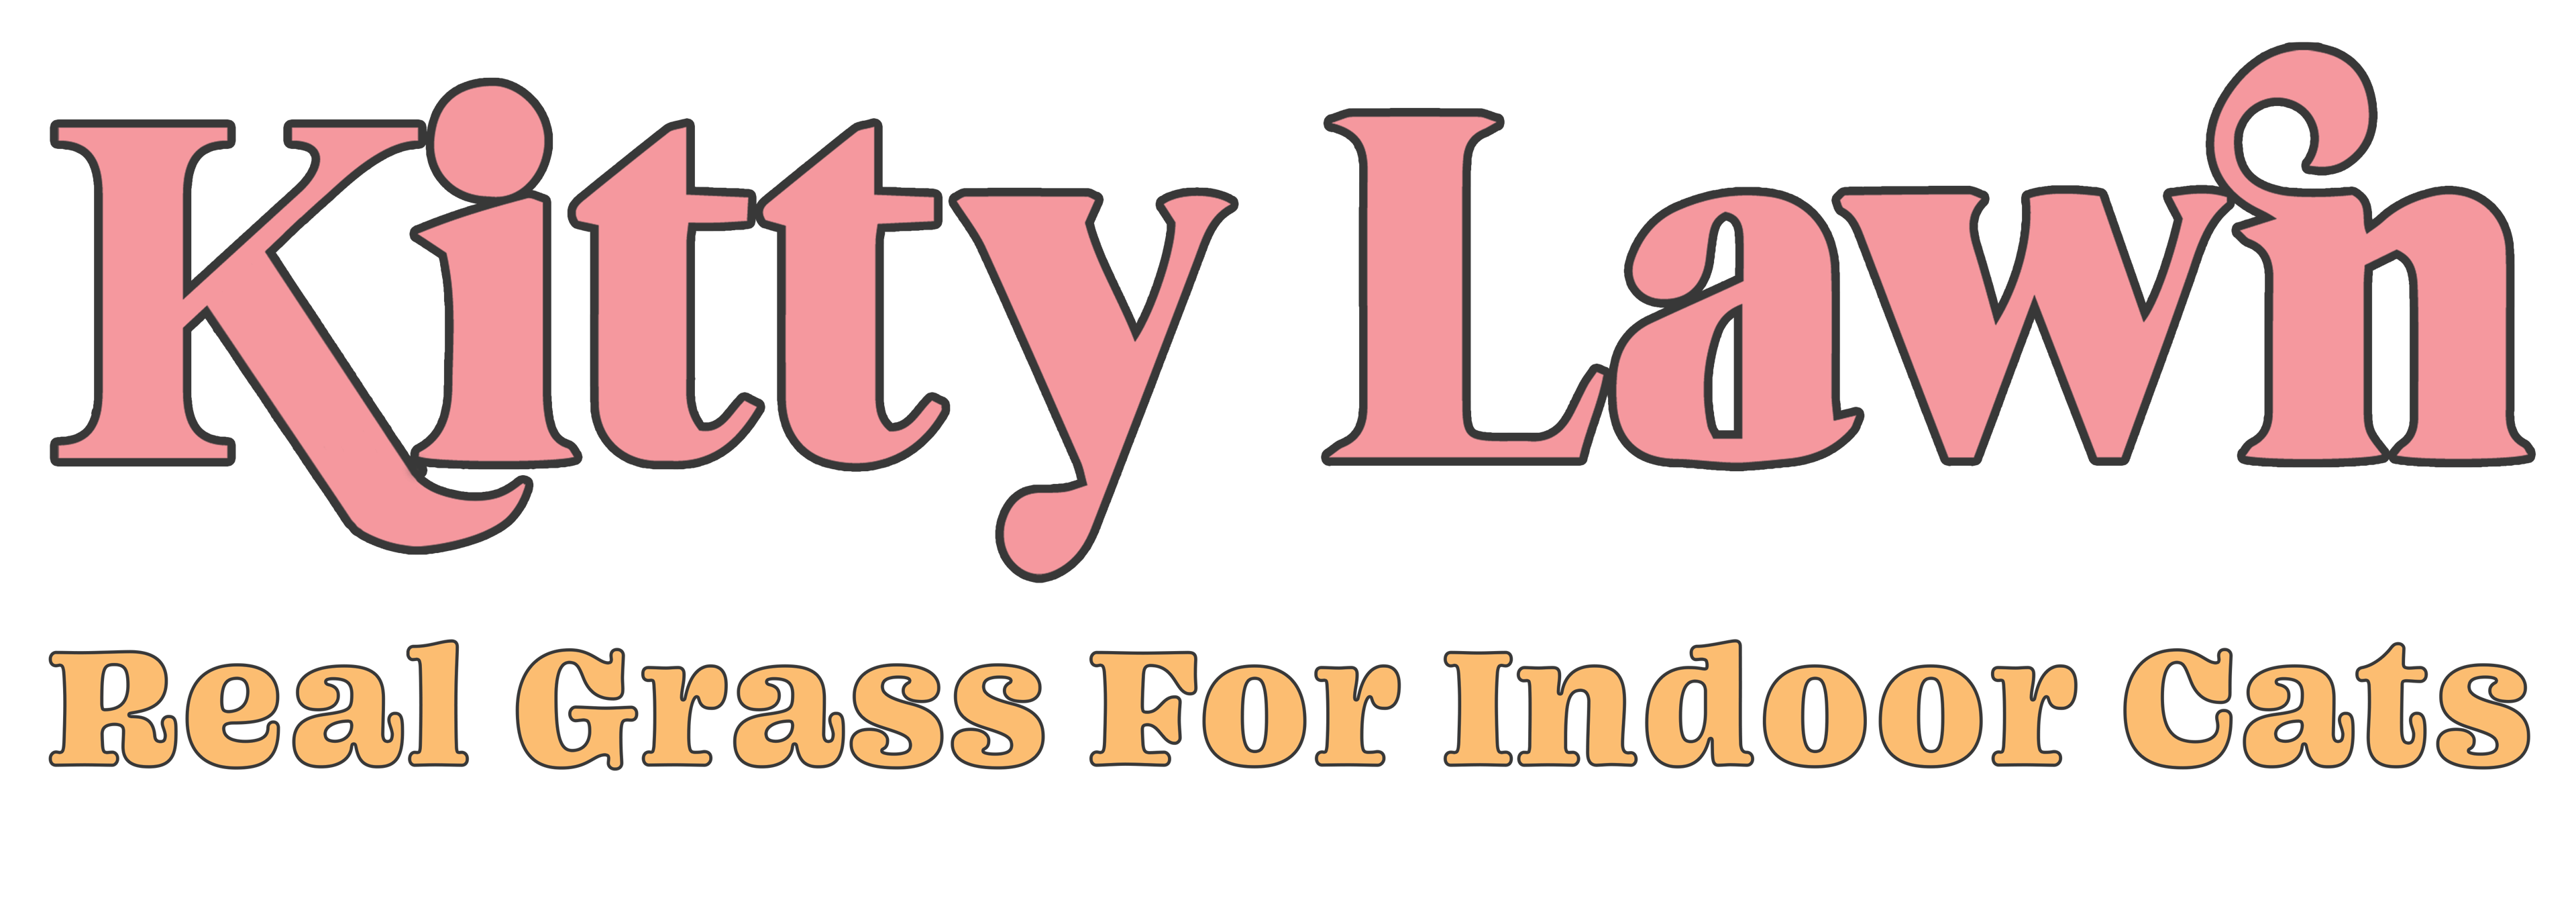 Kitty Lawn logo